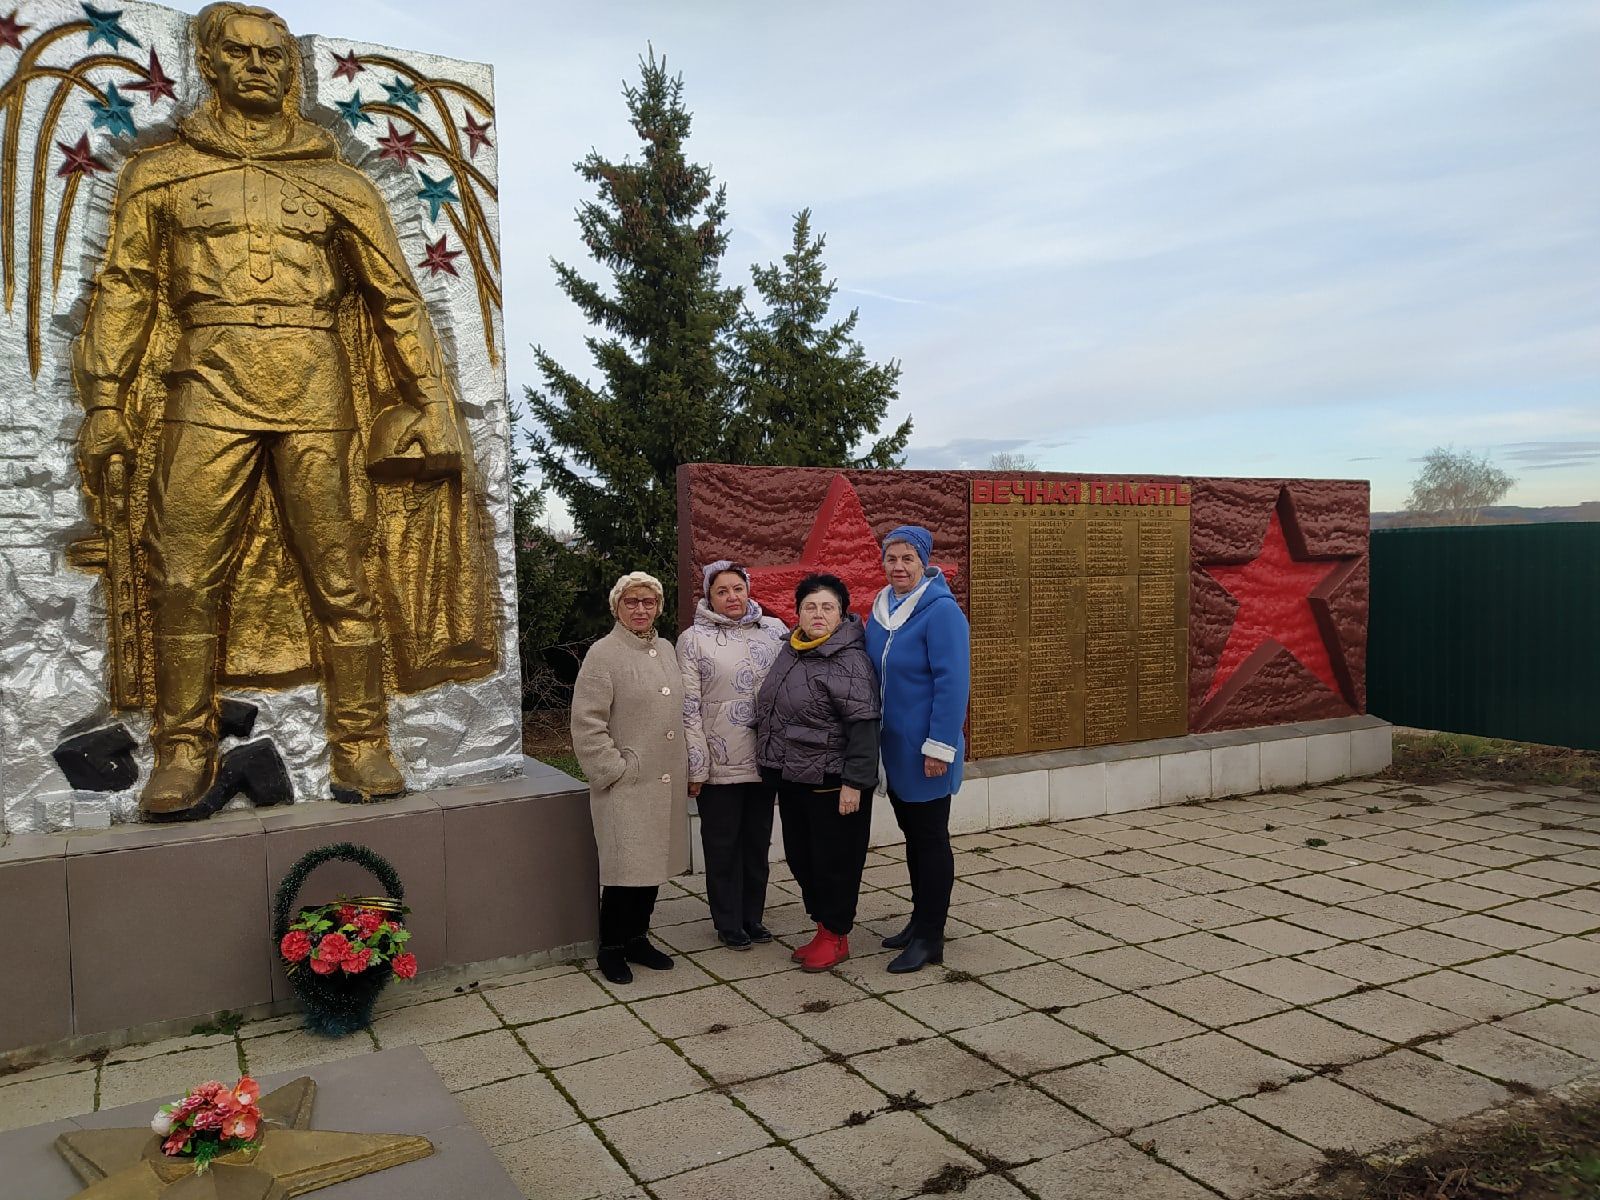 Совет ветеранов (пенсионеров) продолжил работу по ревизии мемориалов участников Великой Отечественной войны